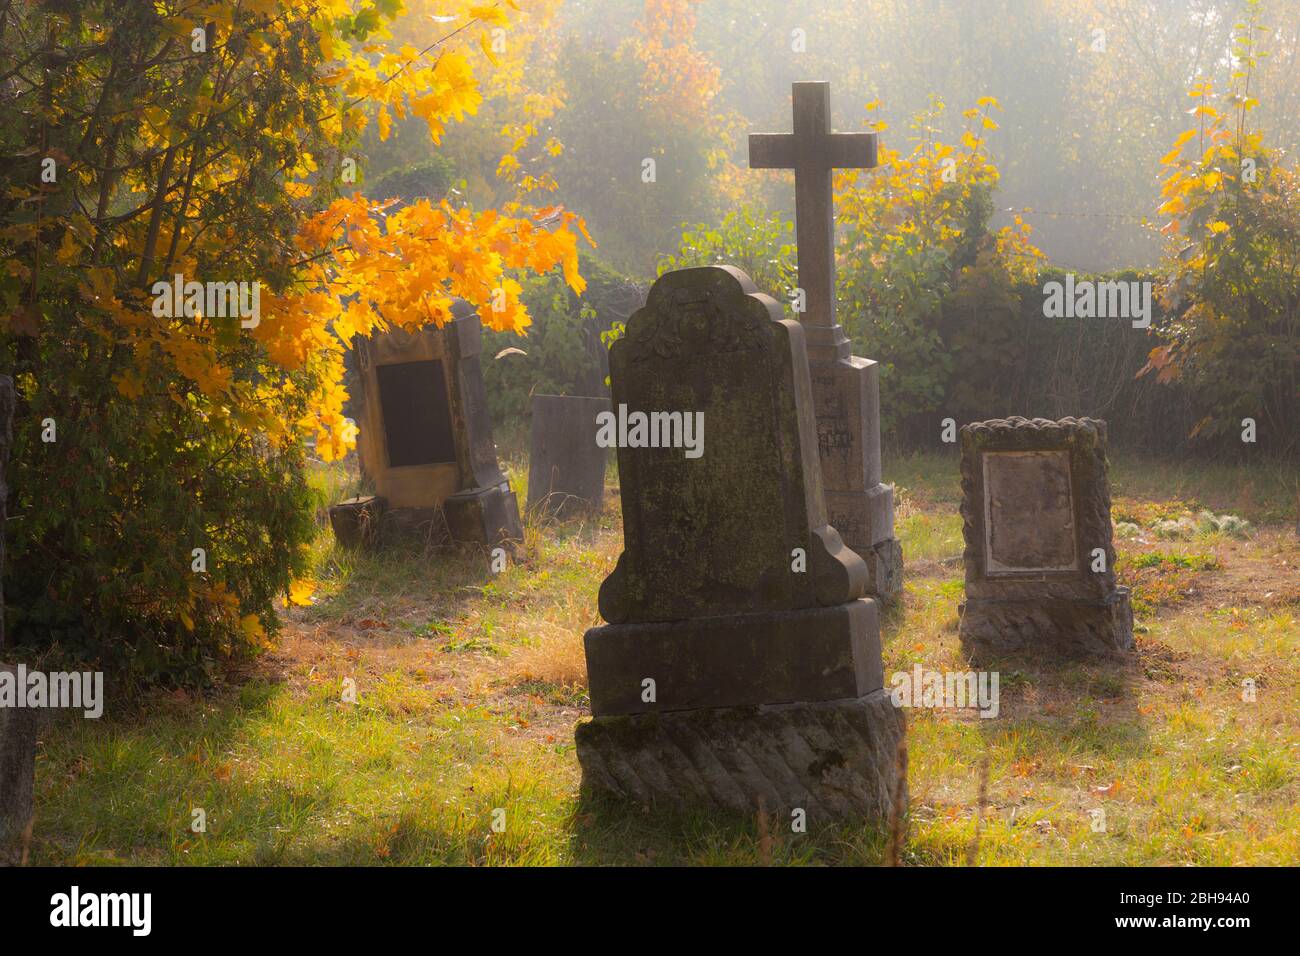 Europe, Poland, Opole Voivodeship, Pokoj / Bad Carlsruhe - cemetery Stock Photo